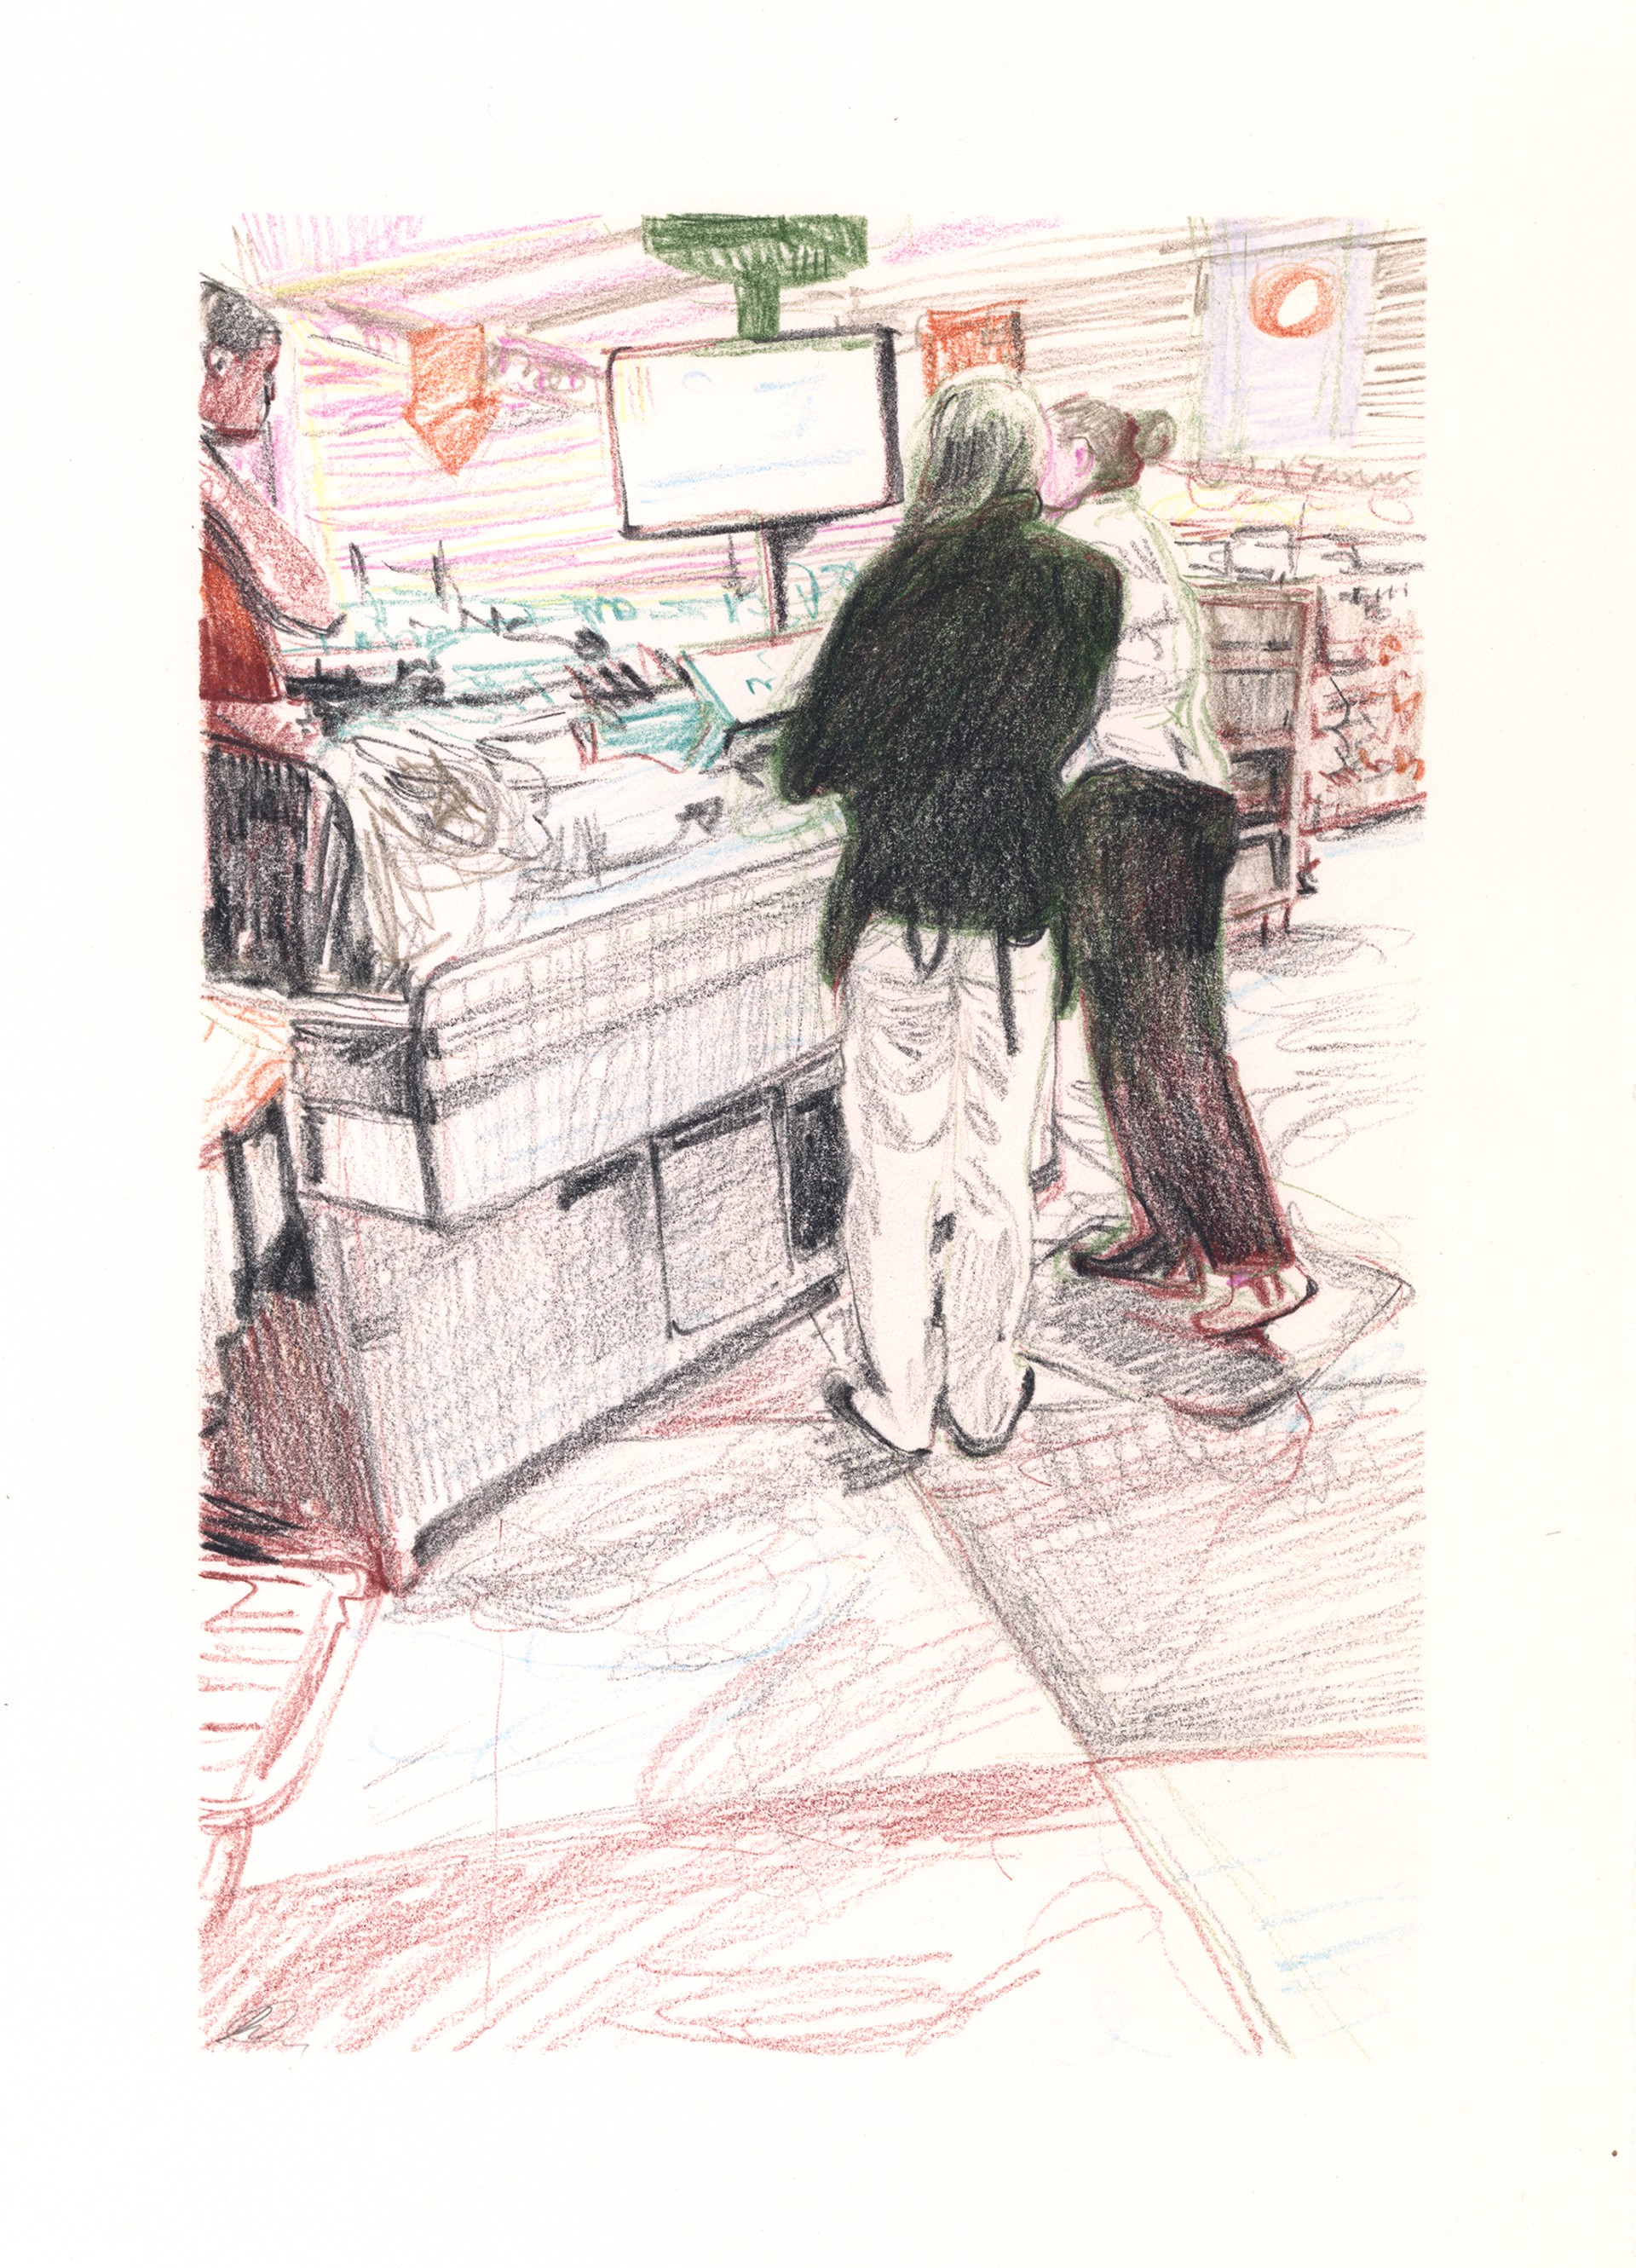 Marketplace/Cashier #15 by Eilis Crean